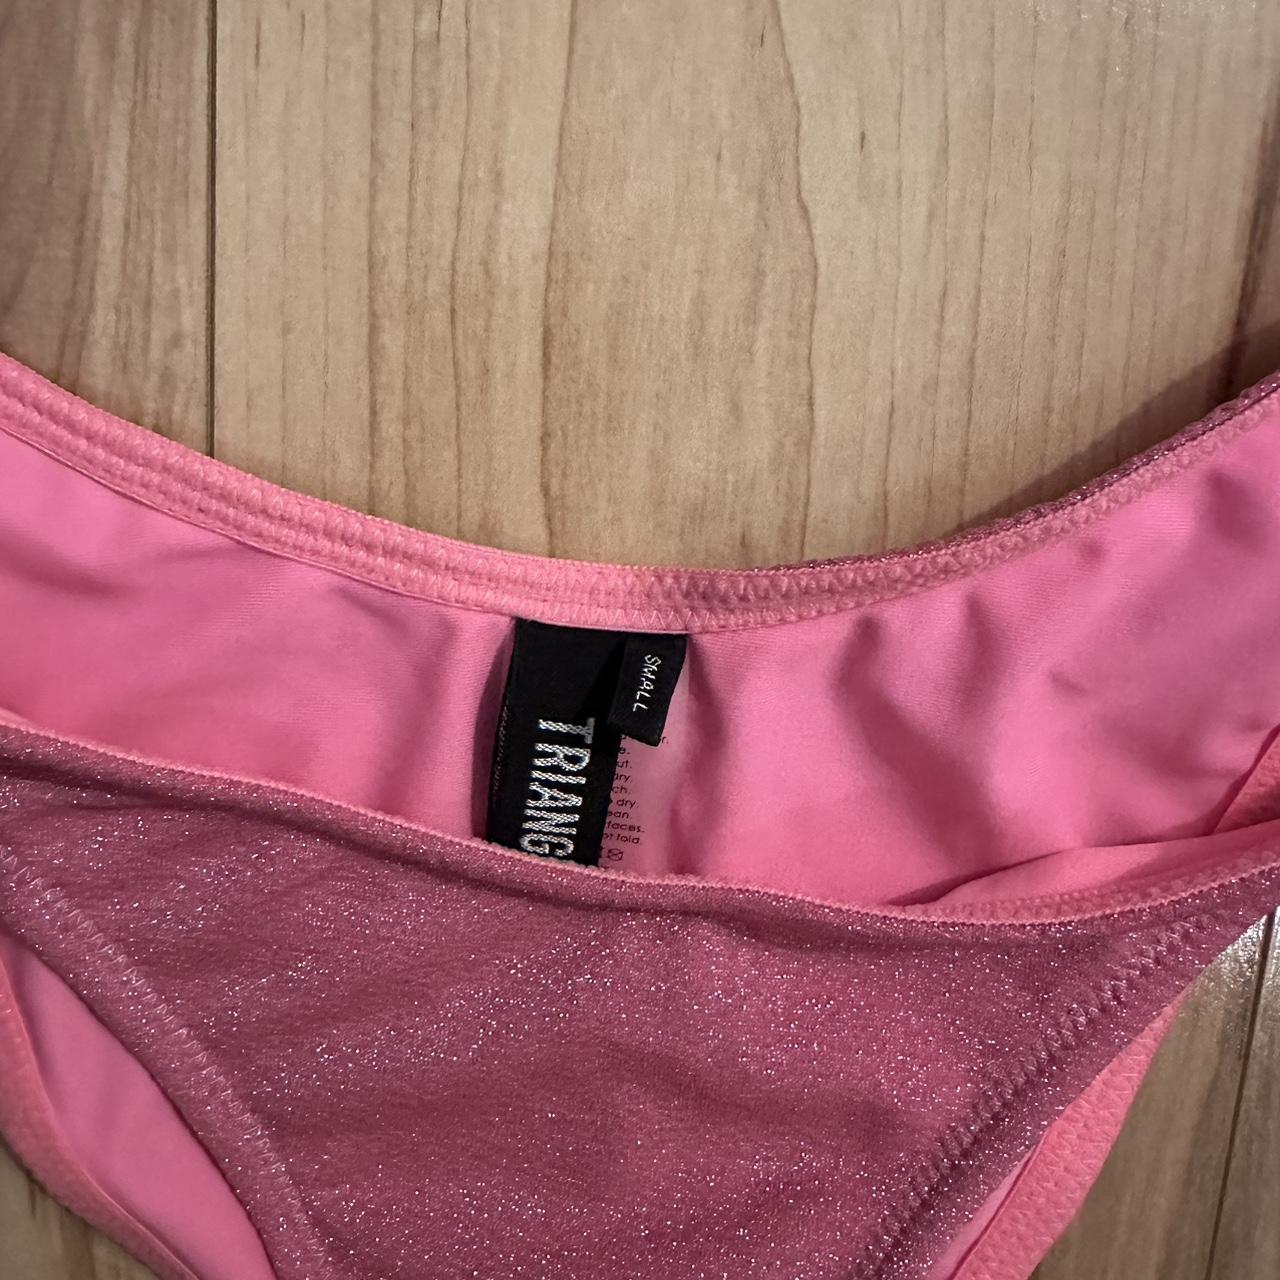 Triangl Mica Pitaya Sparkle Bikini, Pink, M Top & L - Depop